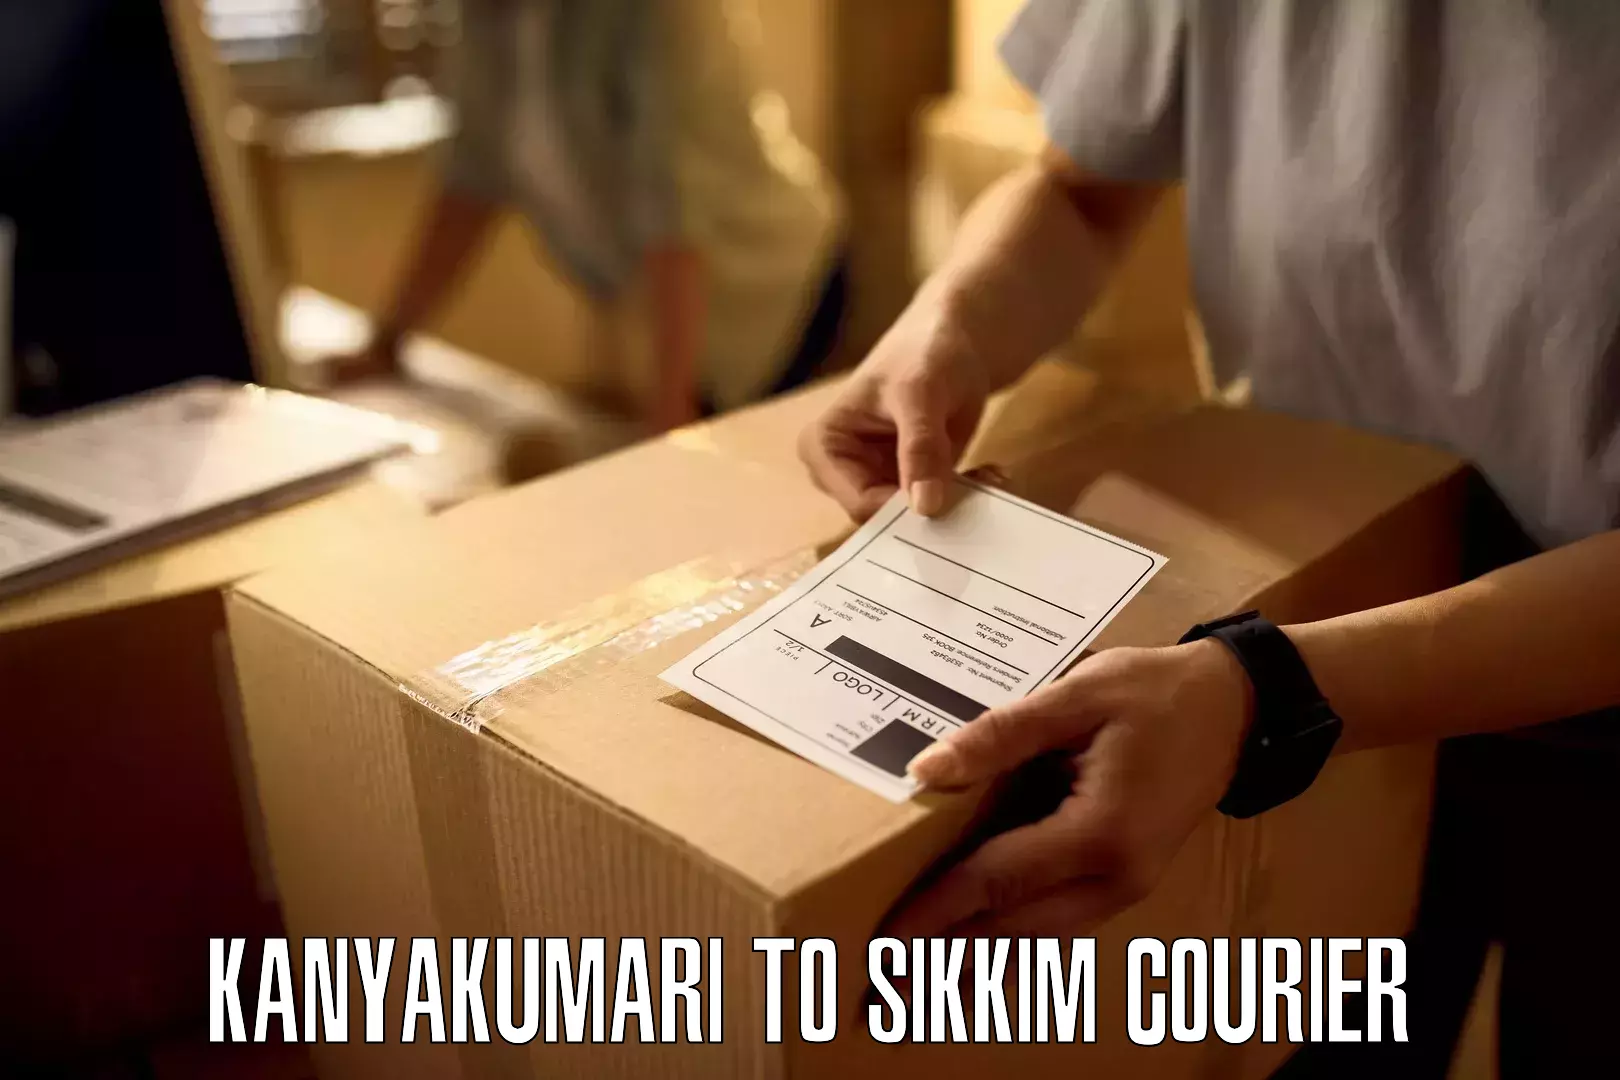 Business shipping needs Kanyakumari to Pelling